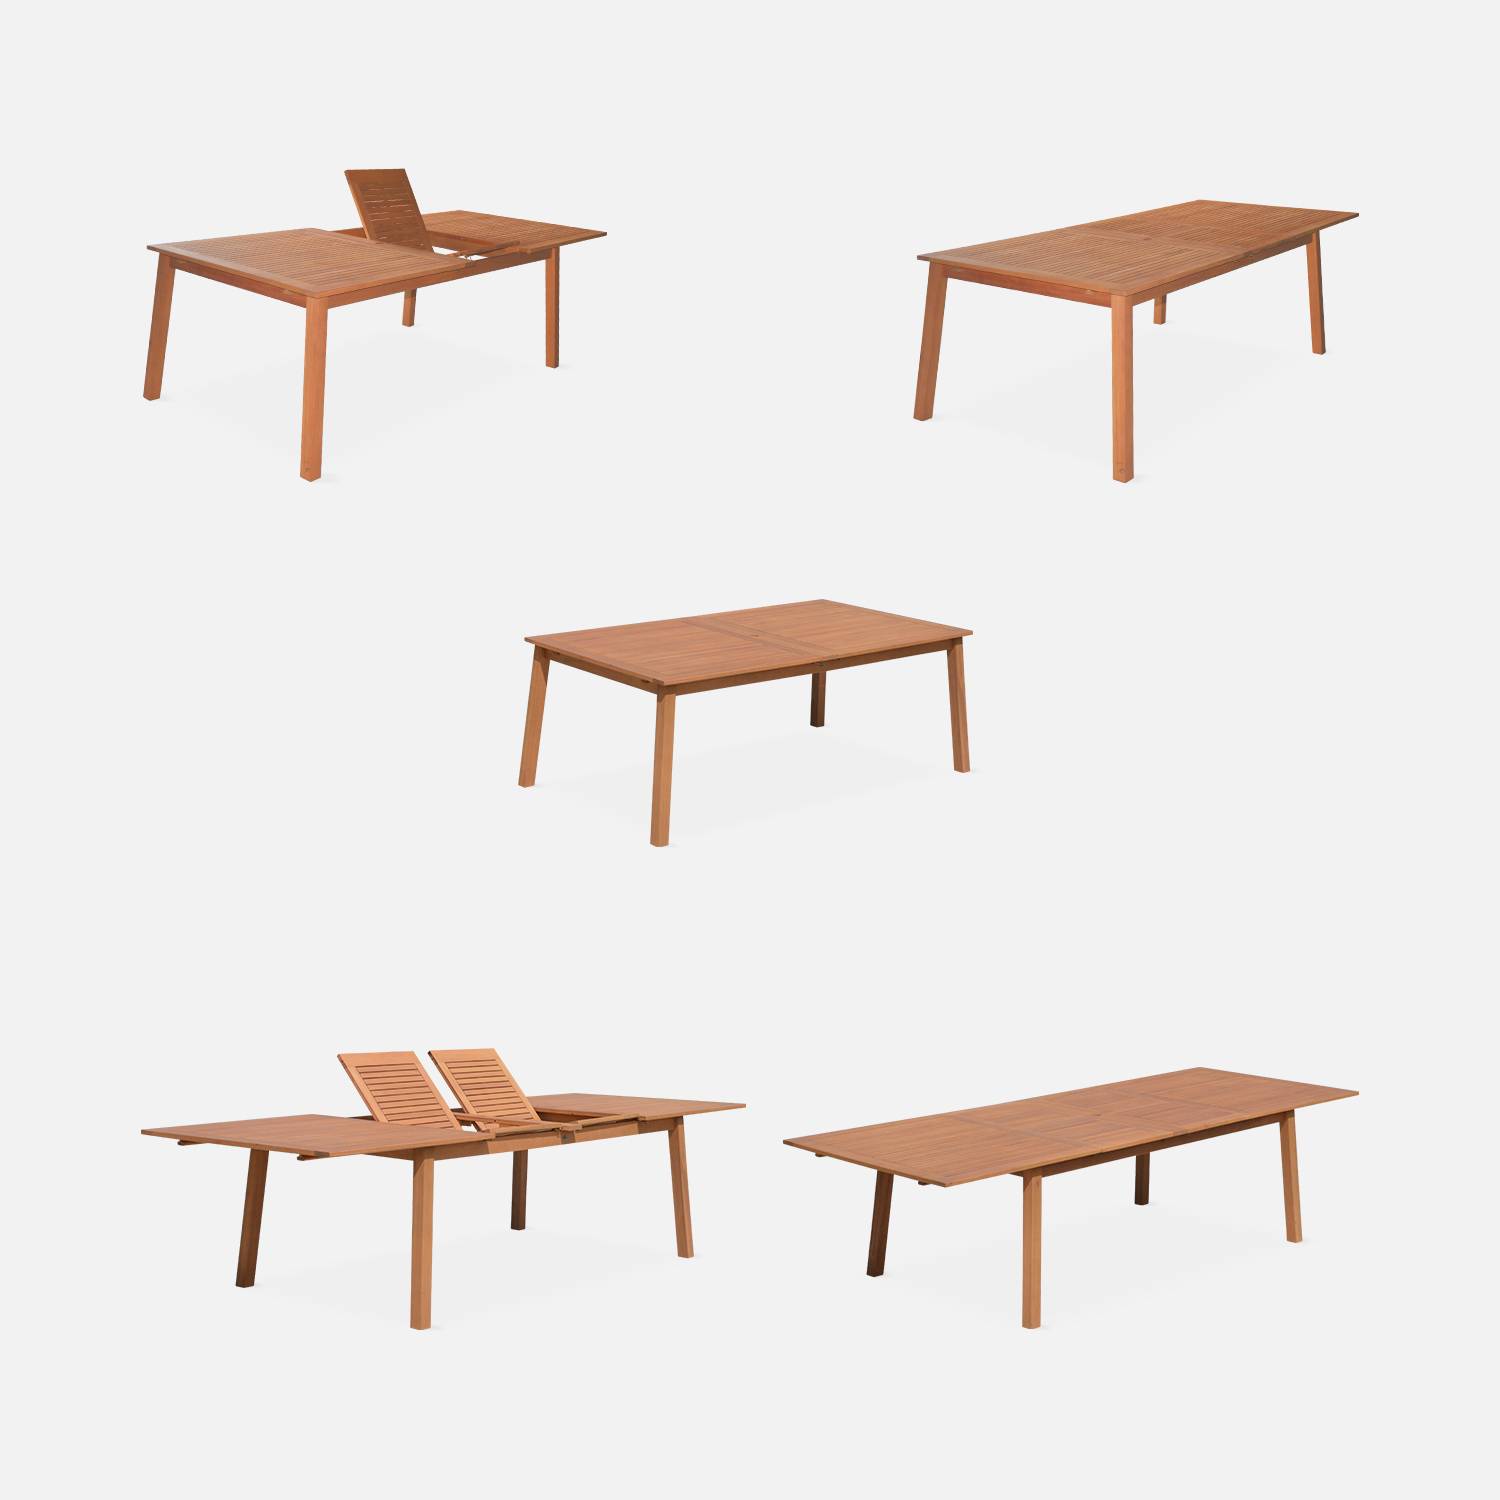 Ausziehbare Gartenmöbel aus Holz - Almeria Tisch 200/250/300cm mit 2 Verlängerungen, 2 Sesseln und 8 Stühlen, aus geöltem FSC Eukalyptusholz und weißem Textilene Photo5